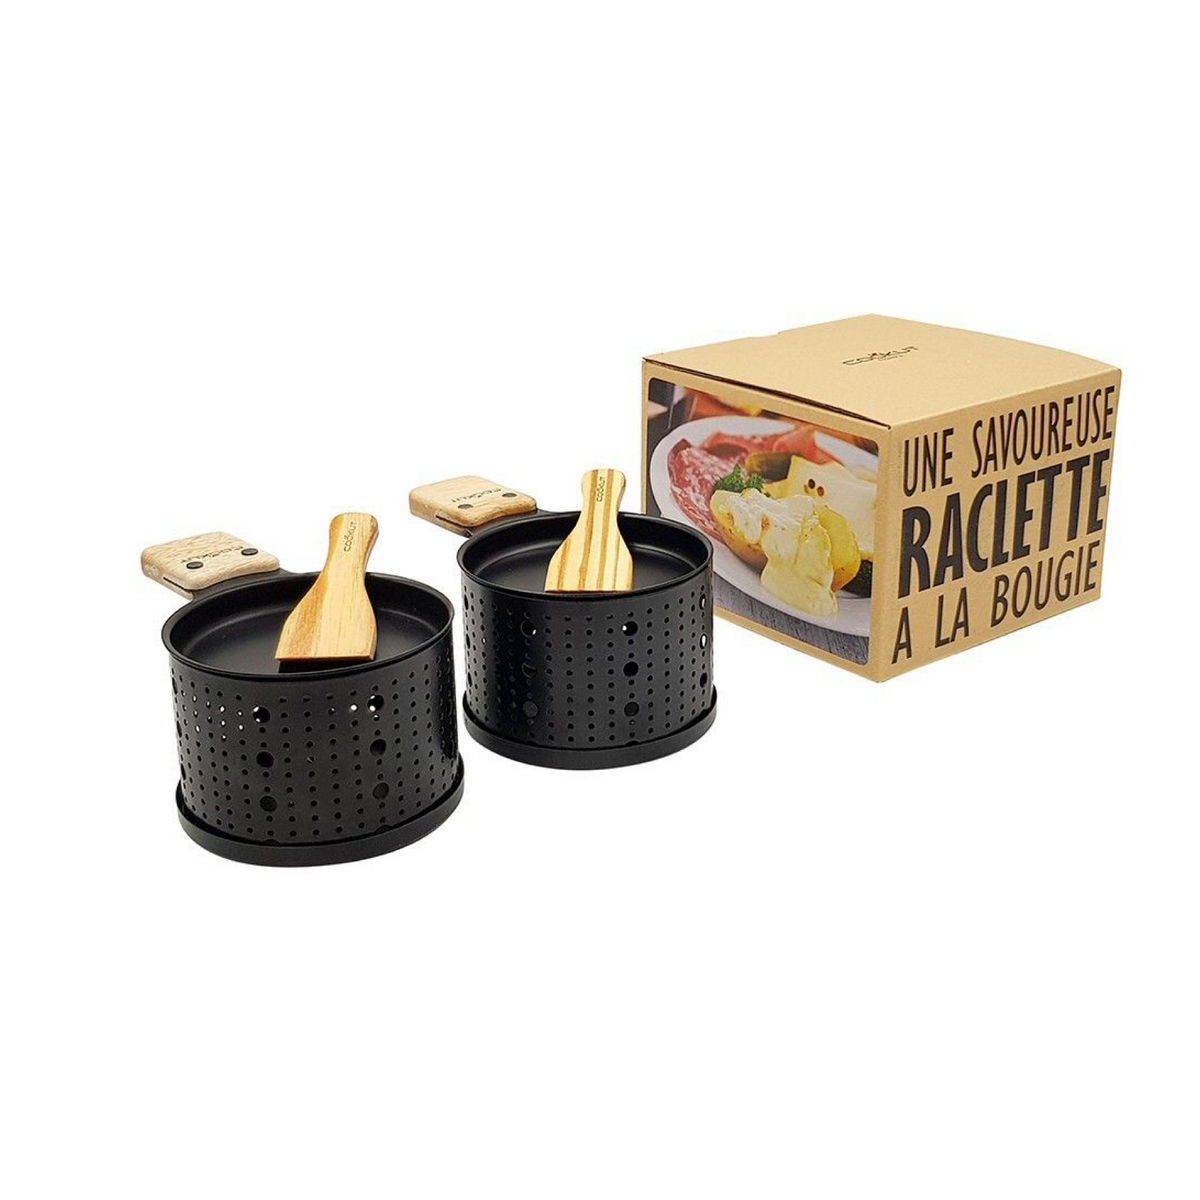 cookut raclette service 2 personne. idee cadeau cuisne. service a raclette. une idee cadeau chez ugo et lea (2)